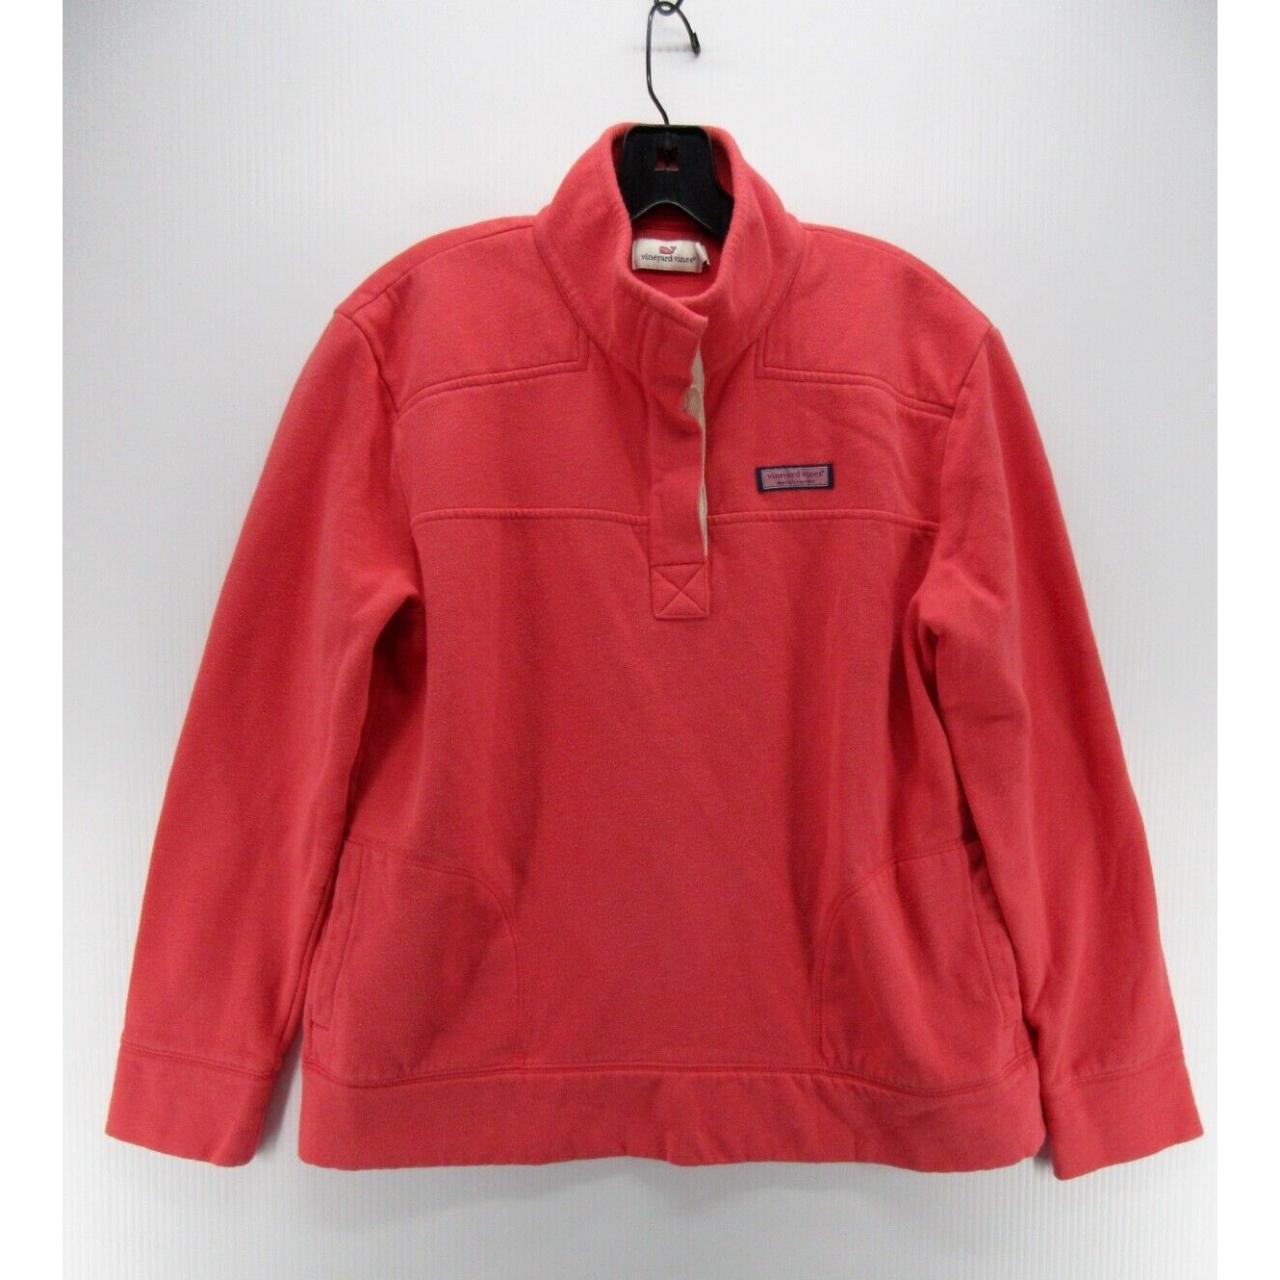 Vineyard Vines Red Fleece Pullover Sweatshirt Men's Medium Jacket Excellent